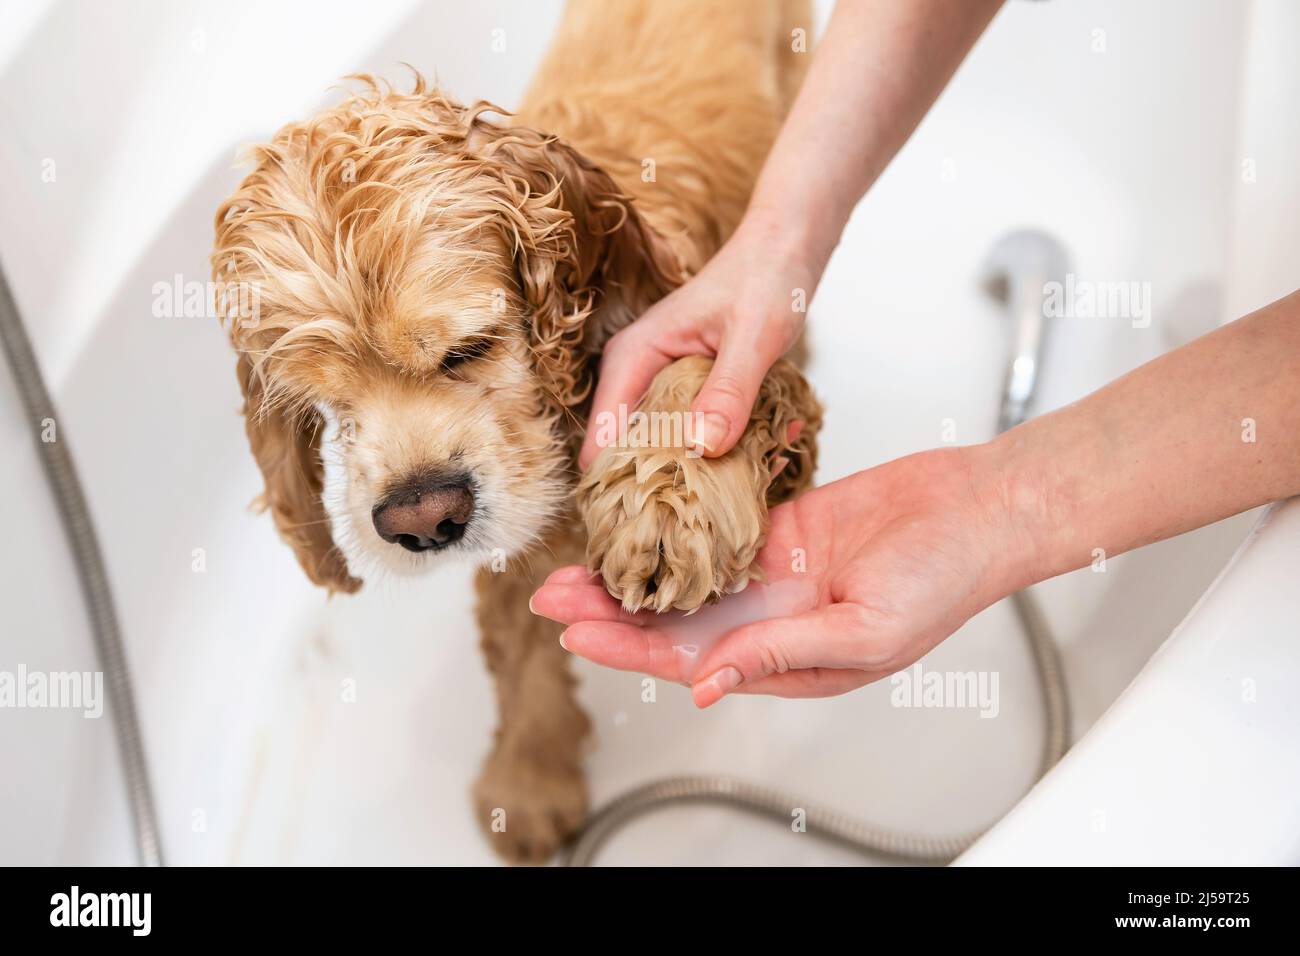 Afeitadora lavando las patas del perro en el baño. Una mano femenina lava la pata de un spaniel con champú. Foto de stock